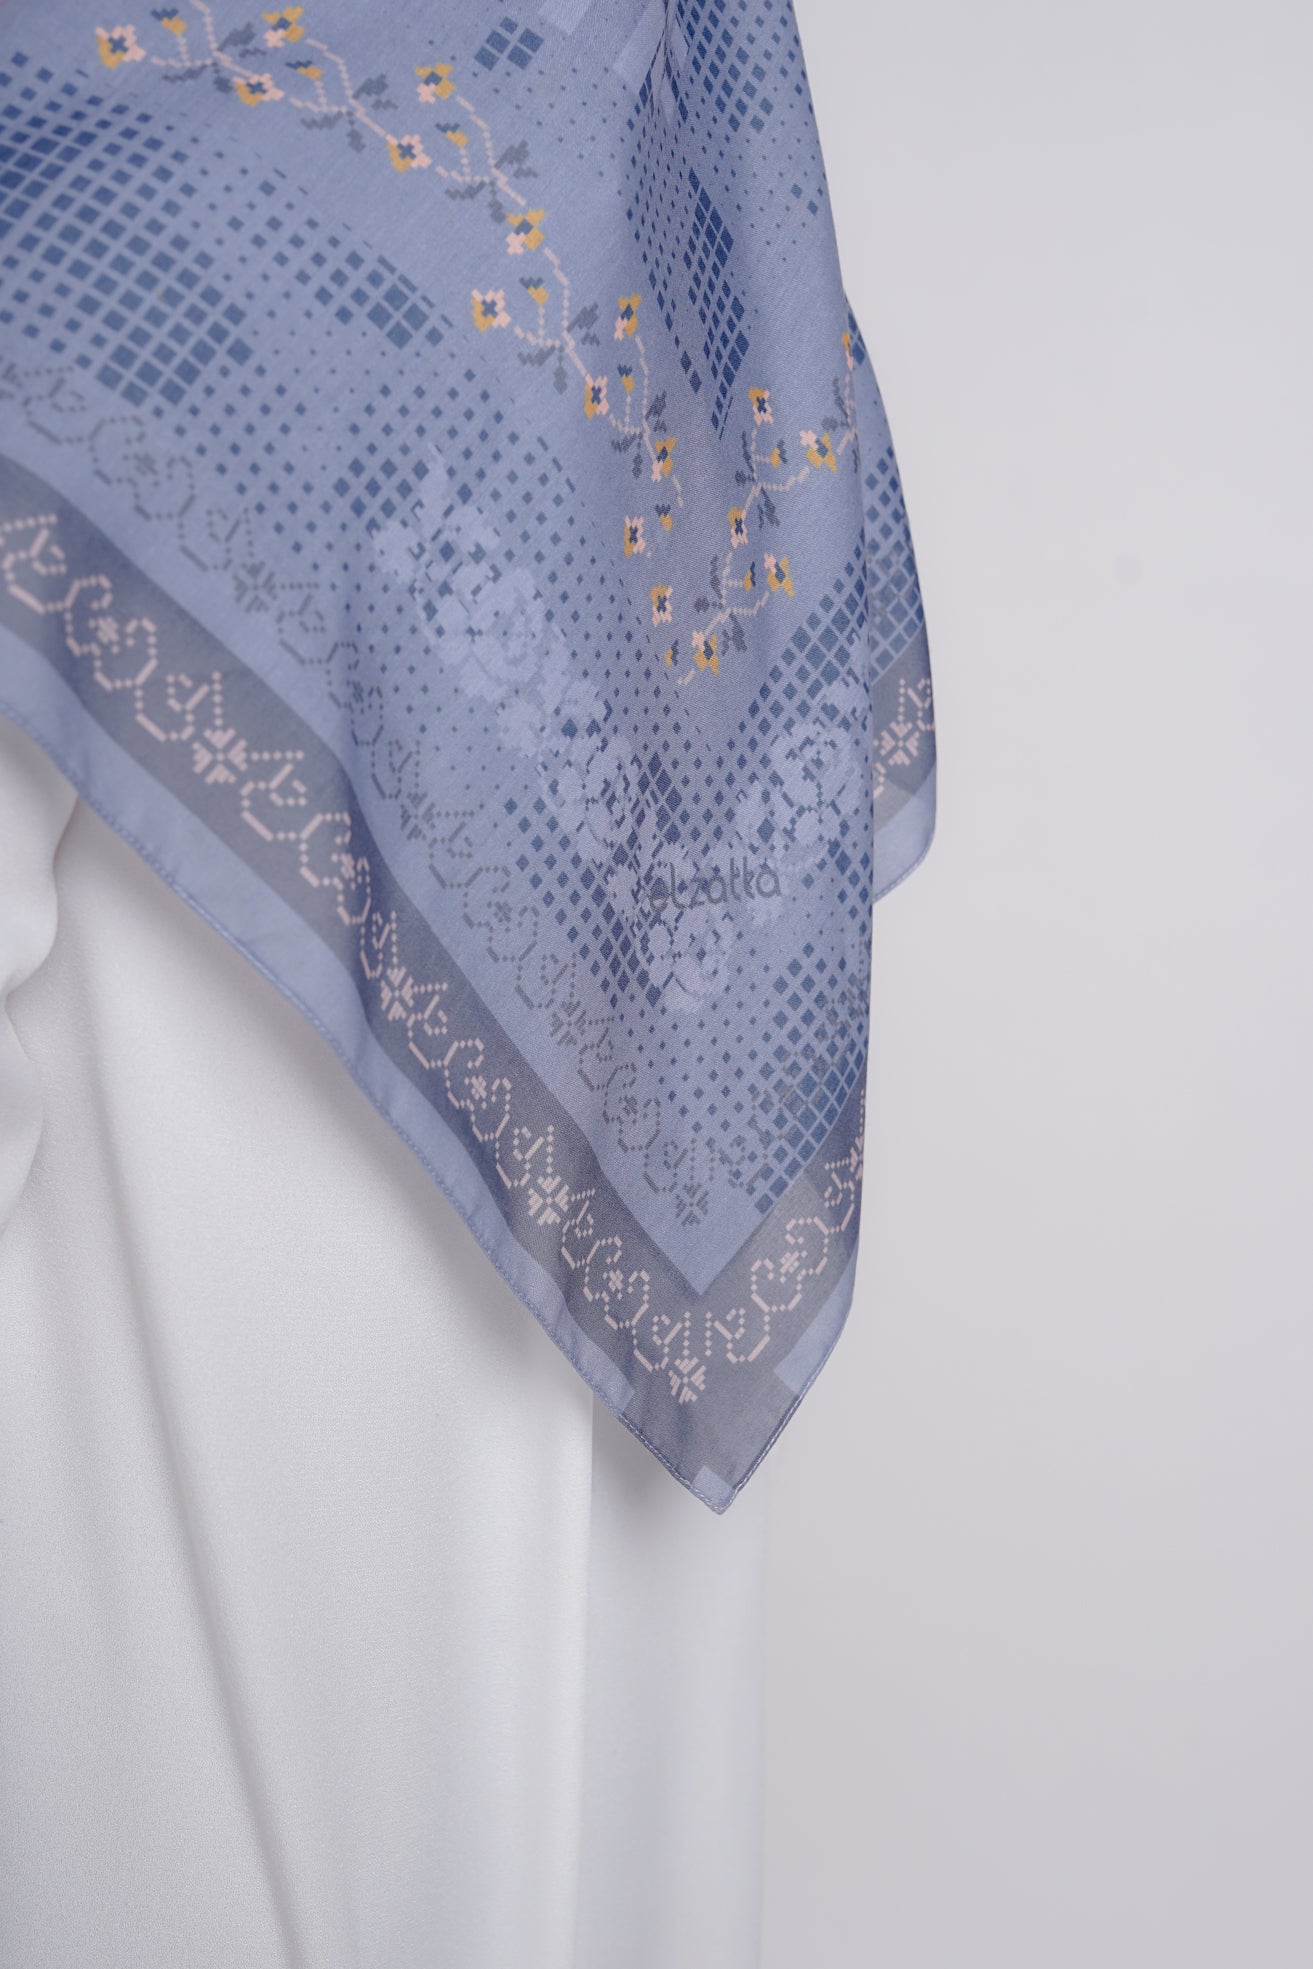 Elzatta - Hijab Segiempat Kaila Pixel Flowar - Dusty Blue